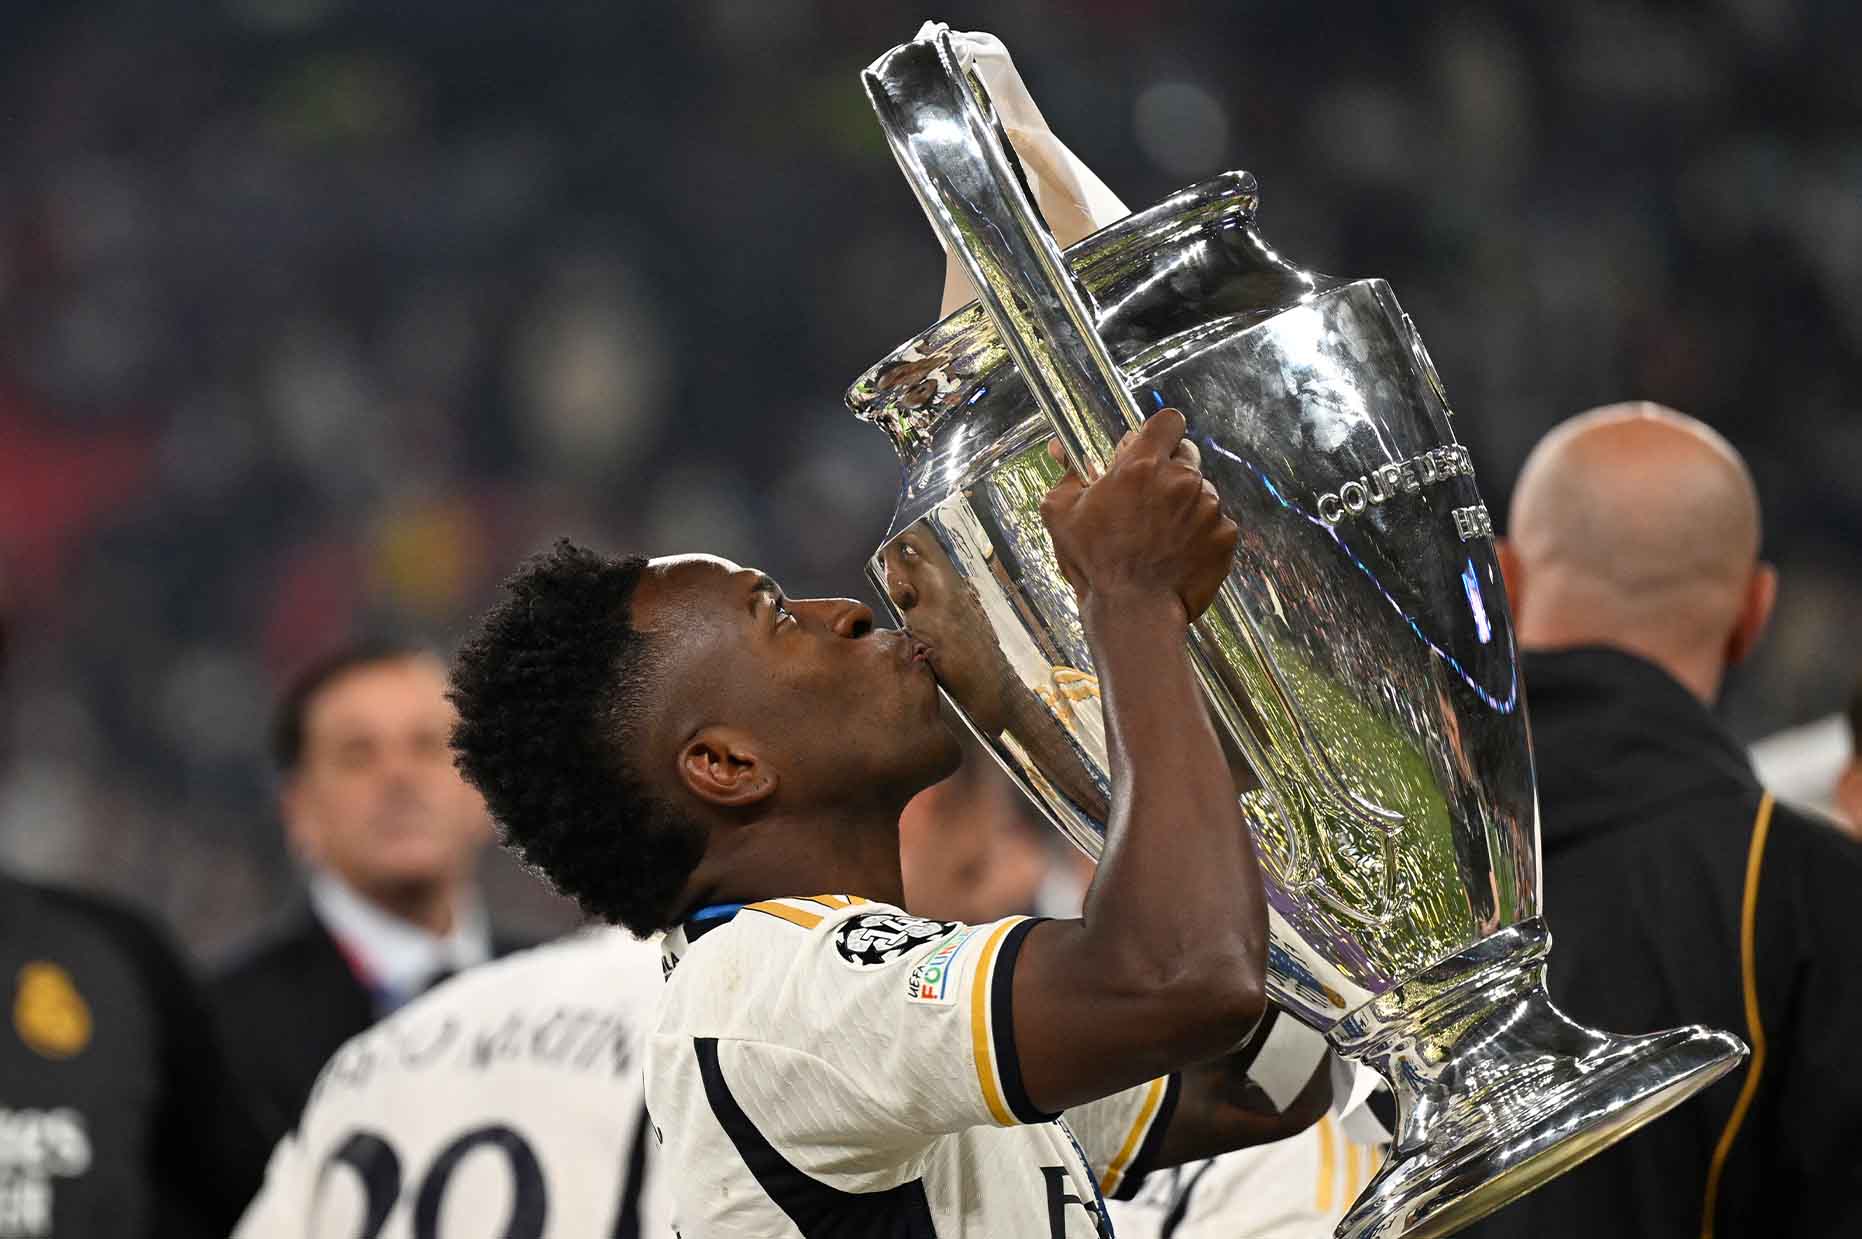 Danh hiệu Champions League thứ 2 trong sự nghiệp ở tuổi 23 của Vinicius. Ảnh: AFP